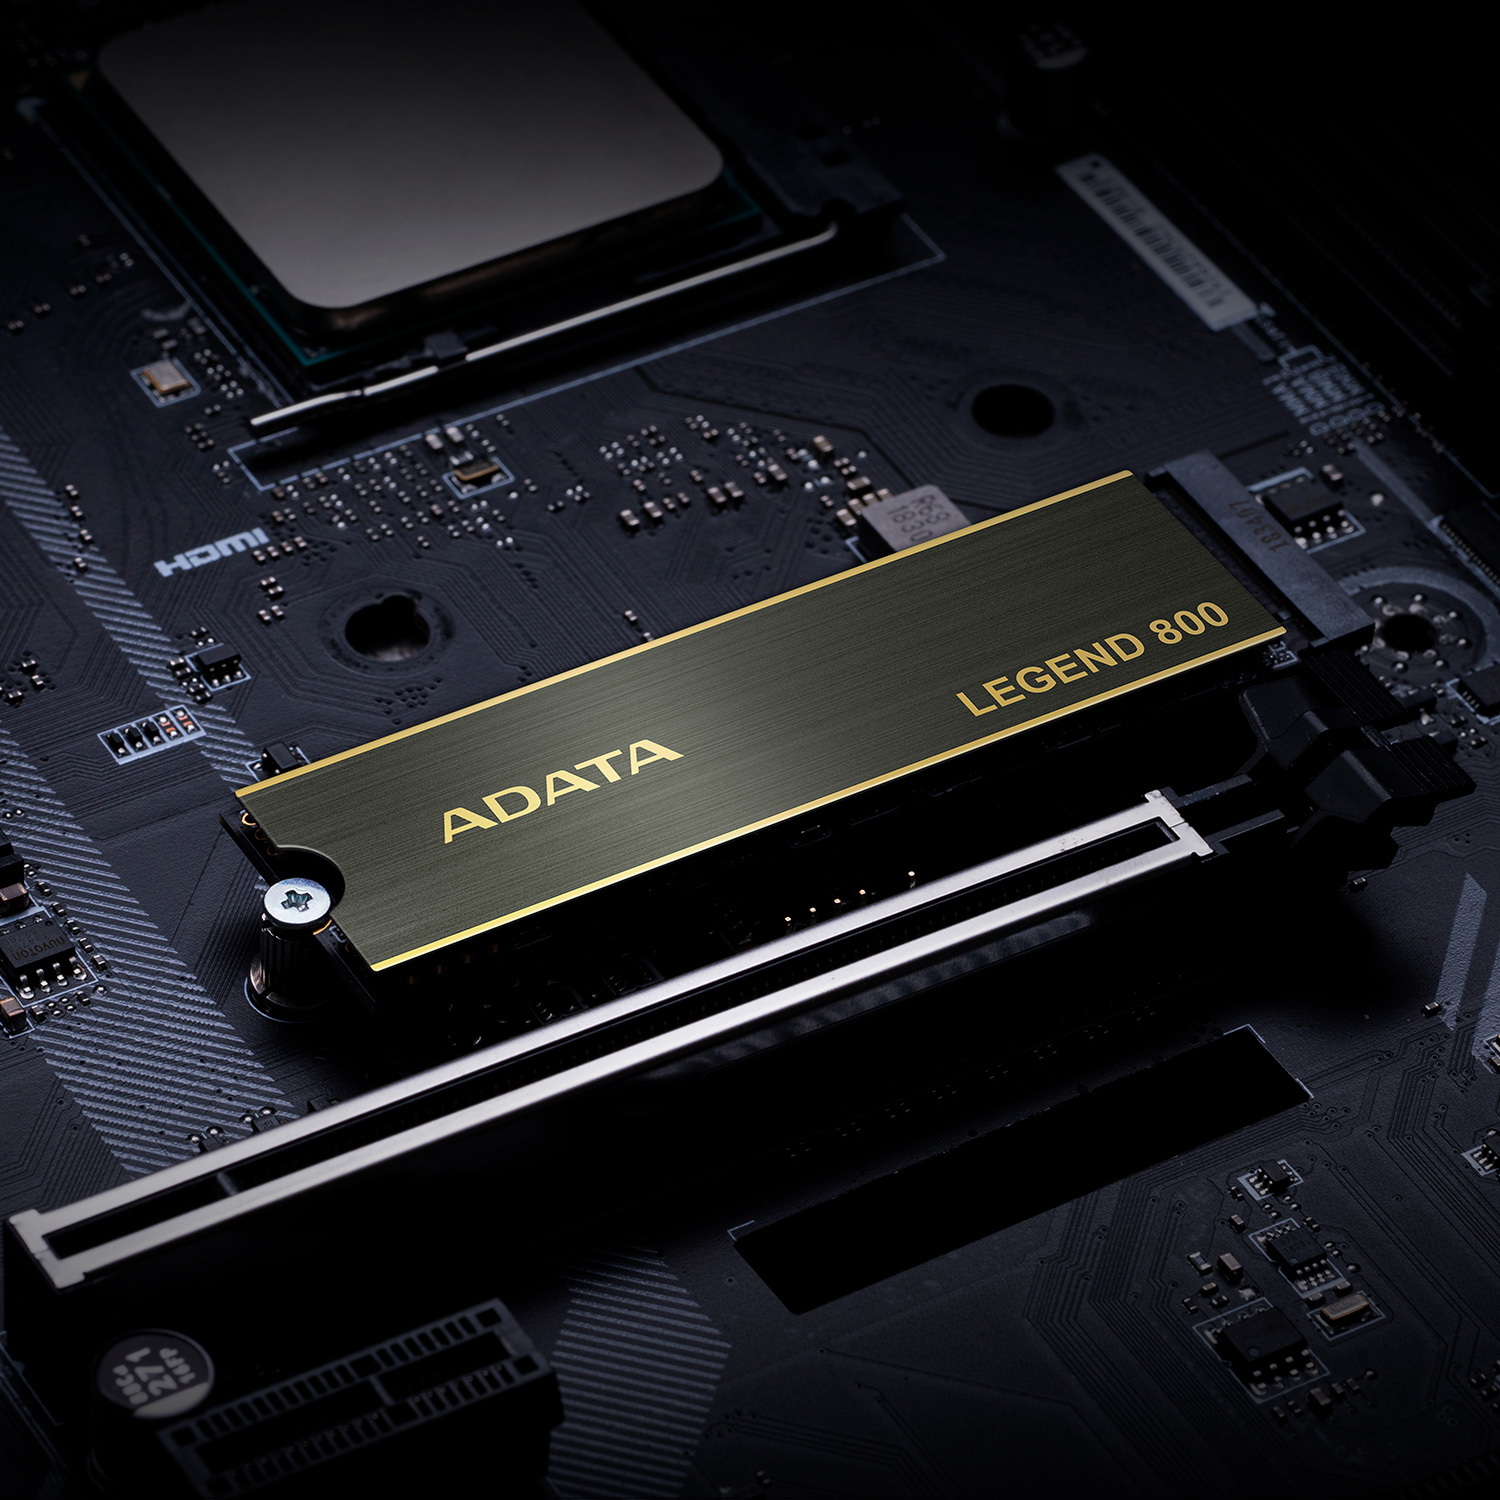 ADATA Legend 800 - SSD - 500 GB - intern - M.2 2280